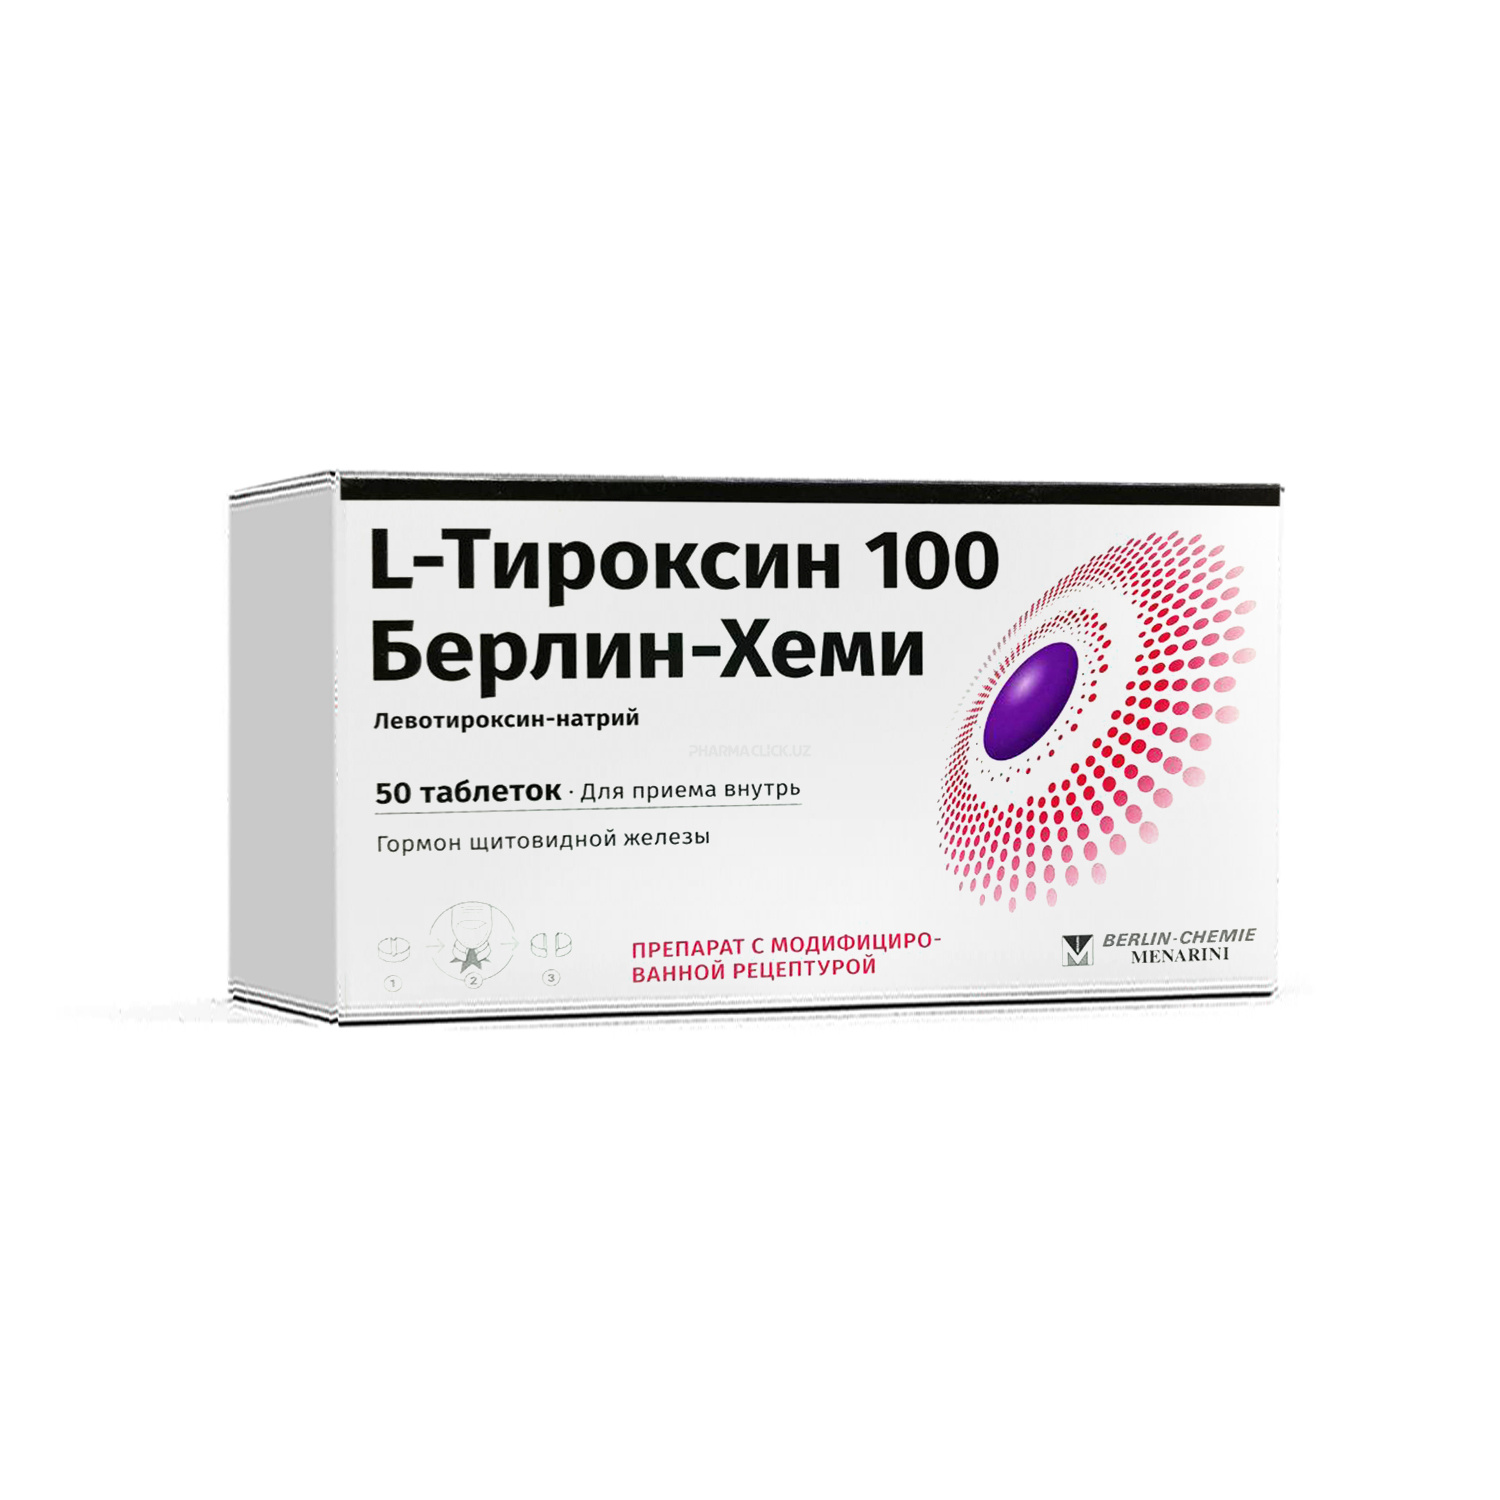 L-Tiroksin 100 tab. №50